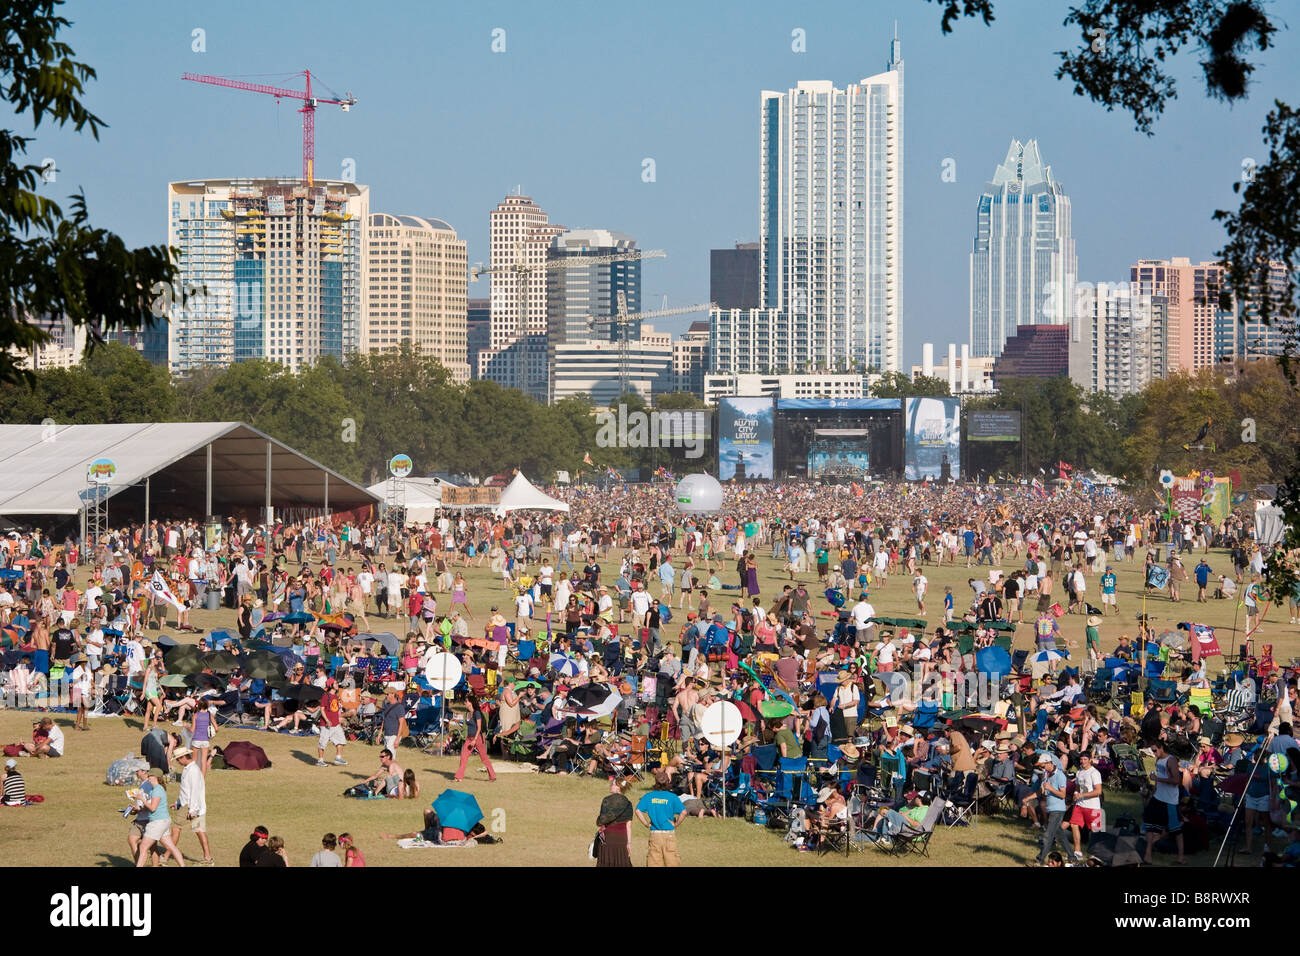 Austin, Texas - Des milliers de fans se rassemblent sur la pelouse du parc Zilker pendant l'Austin City Limits Music Festival 2008 Banque D'Images